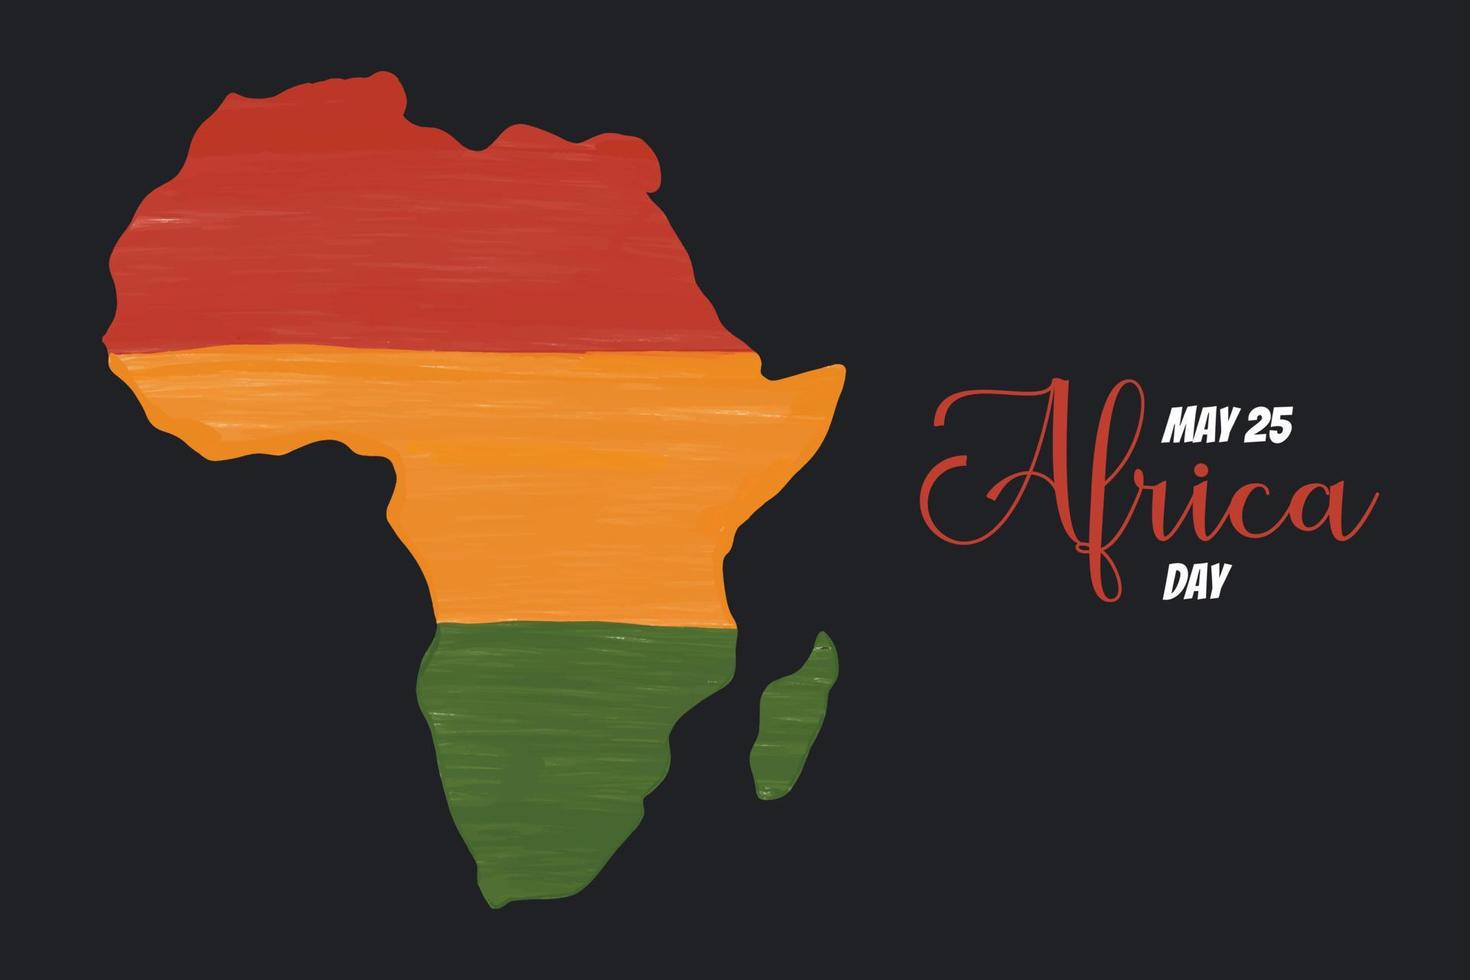 afrika-tag am 25. mai. kontinent afrika künstlerische handgezeichnete grunge-strukturierte kartenvektorillustration auf schwarzem hintergrund. aftistisches Banner-Template-Design. vektor